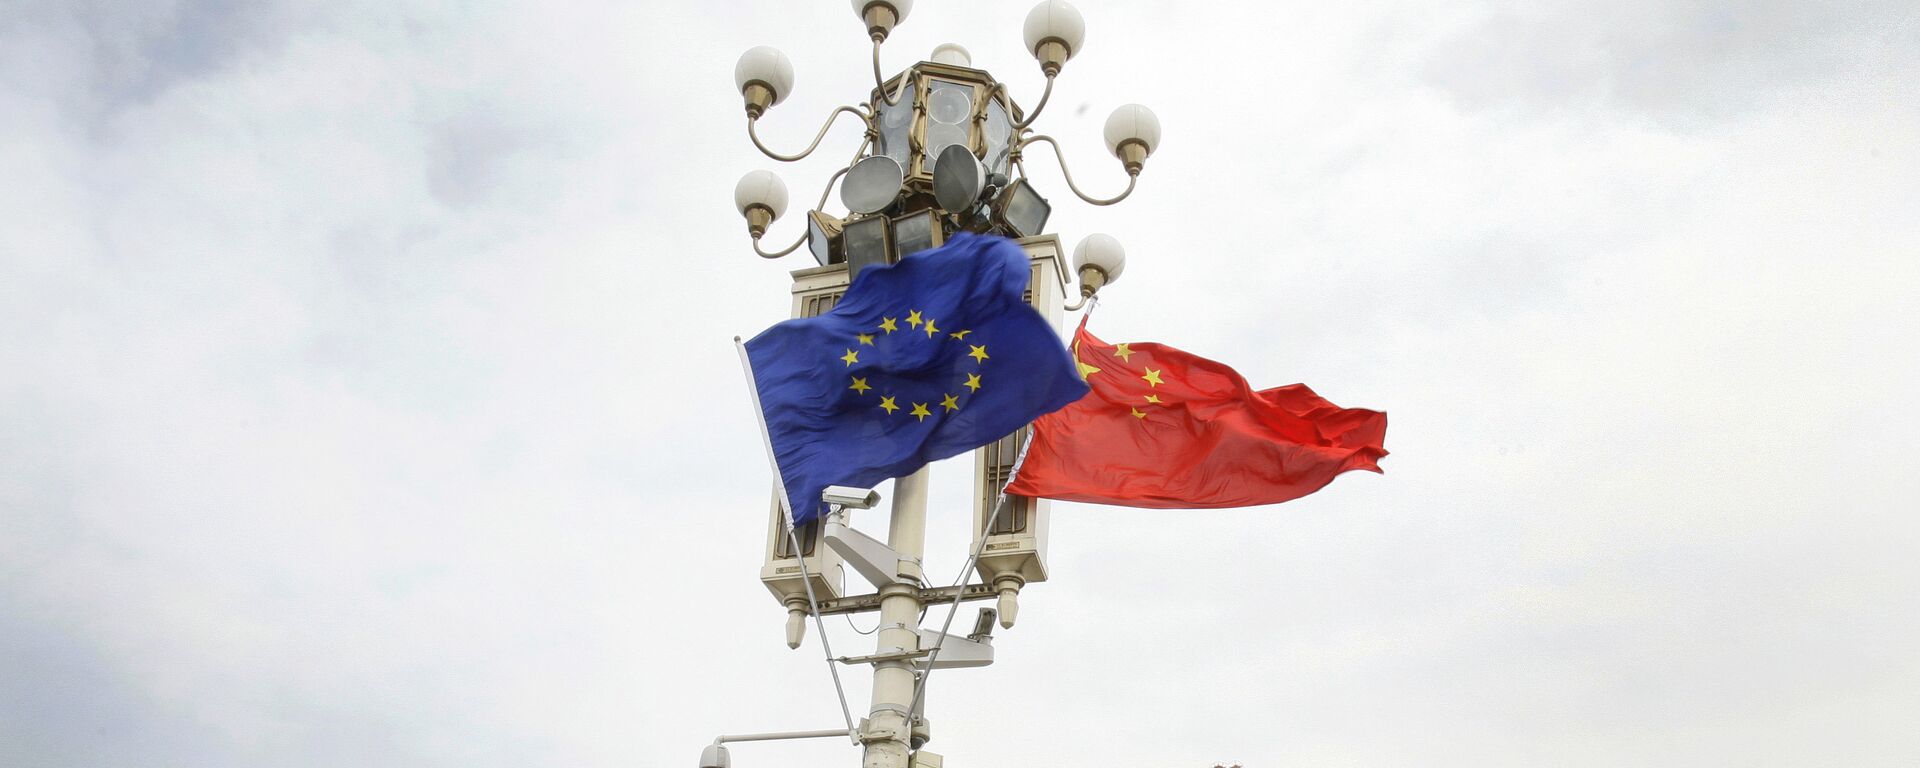 Las banderas de la UE y China - Sputnik Mundo, 1920, 02.01.2021